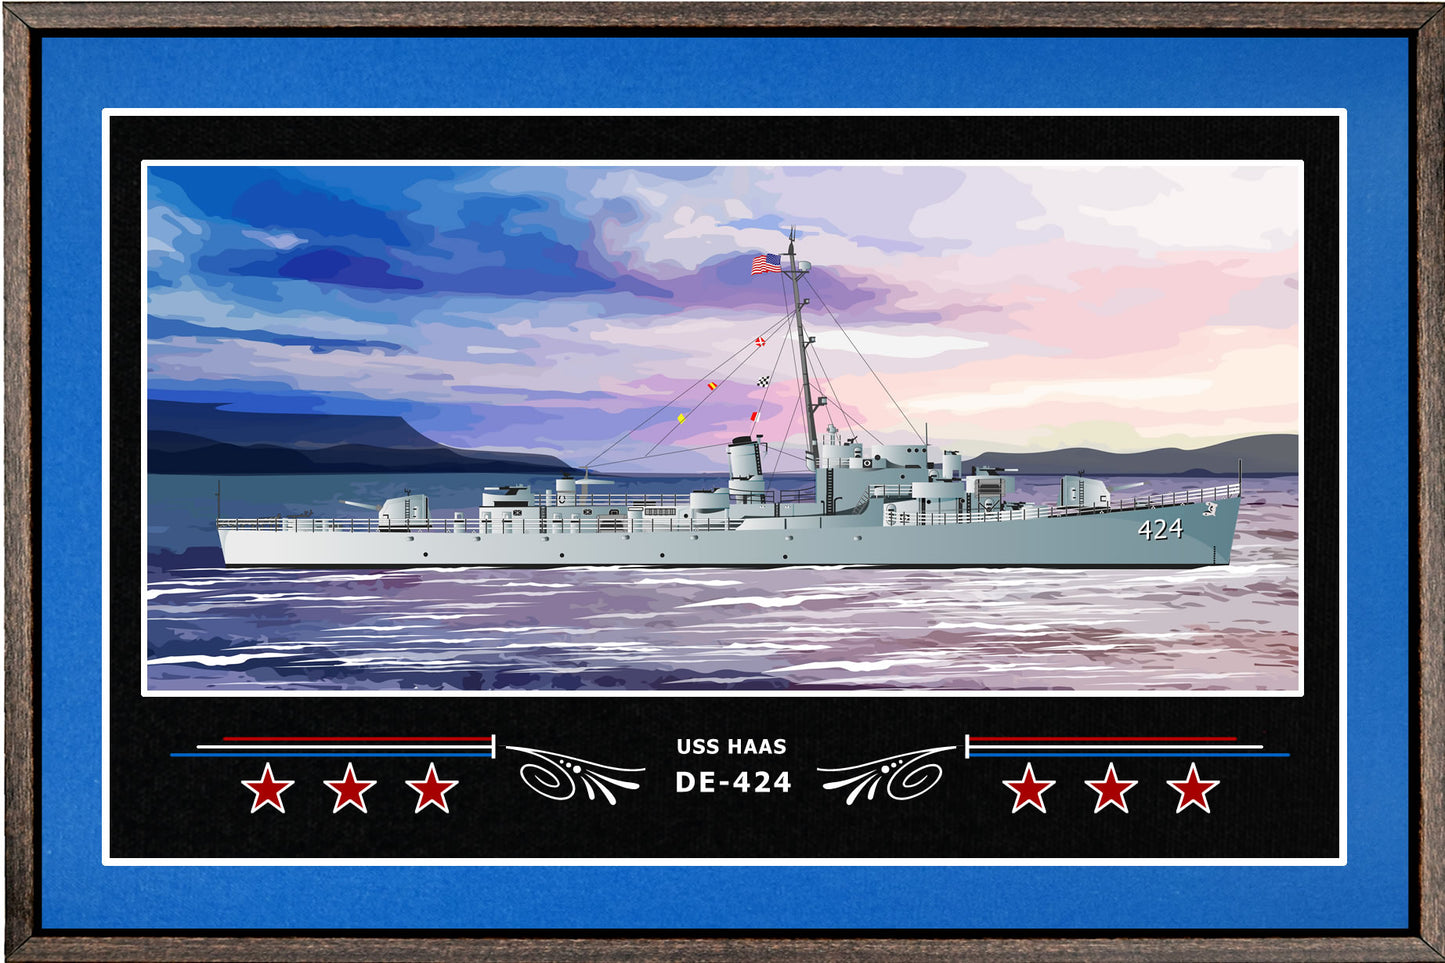 USS HAAS DE 424 BOX FRAMED CANVAS ART BLUE